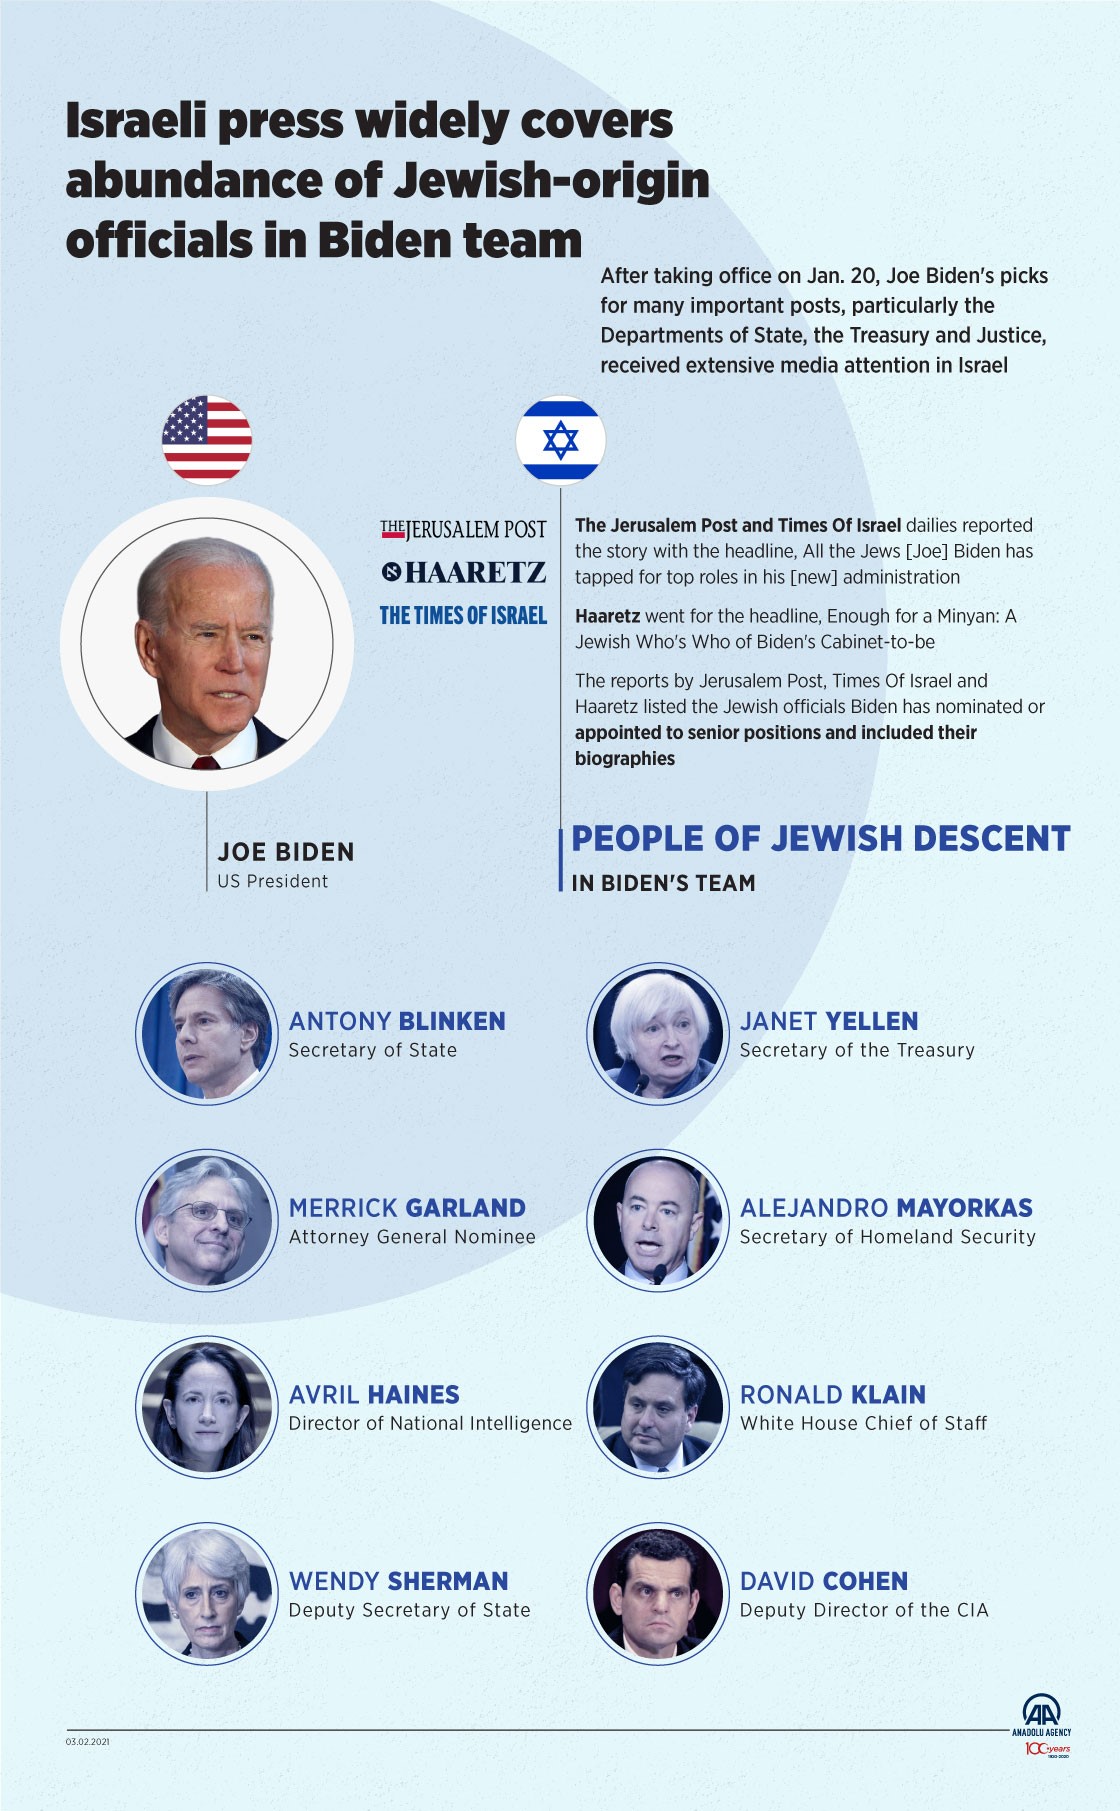 Jewish-origin officials in Biden's team